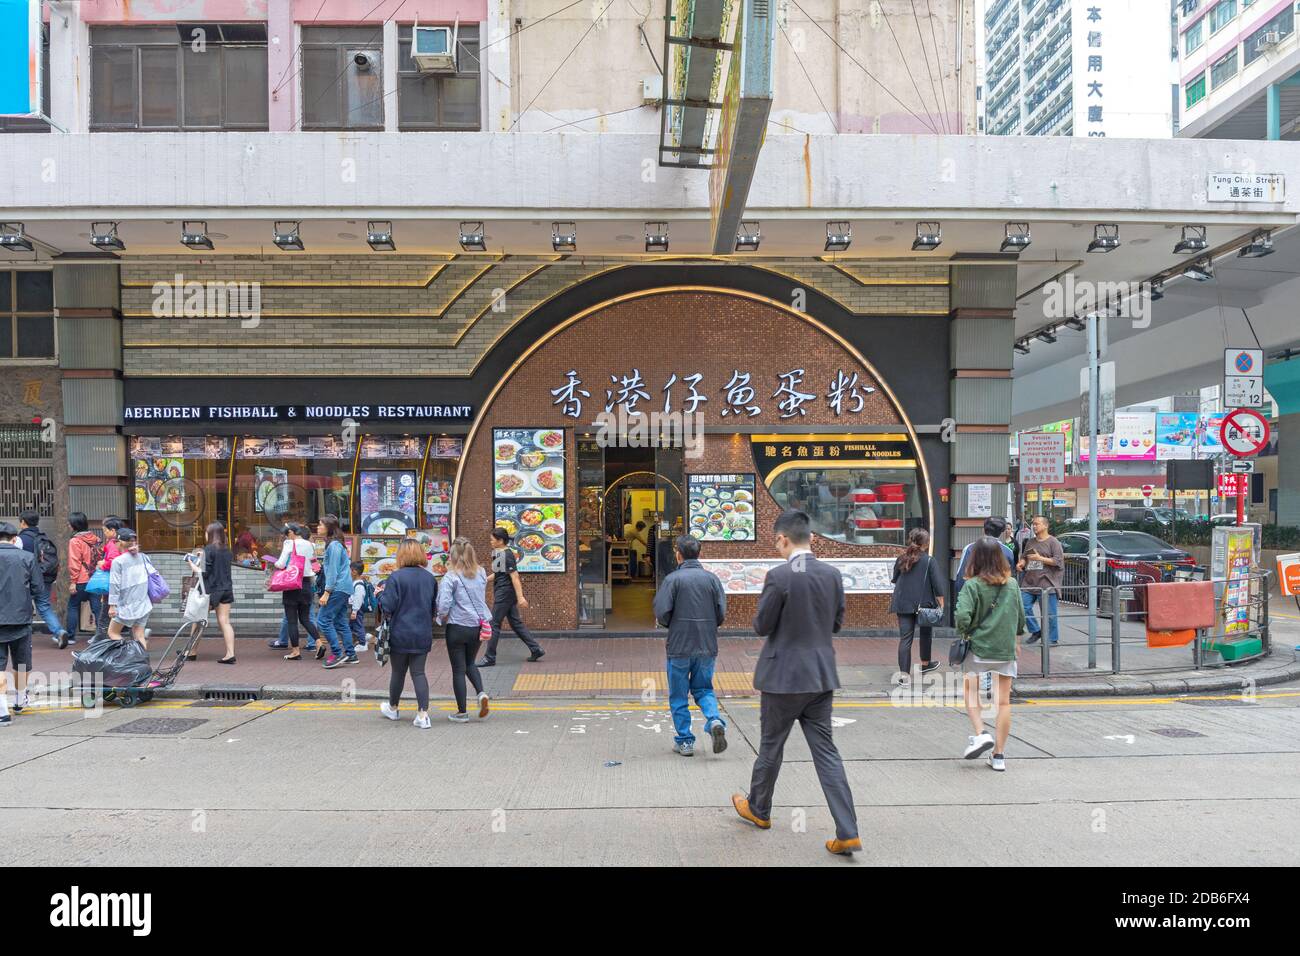 Hong Kong, China - April 25, 2017: Aberdeen Fishball and Noodles Restaurant at Tung Choi Street in Hong Kong, China. Stock Photo